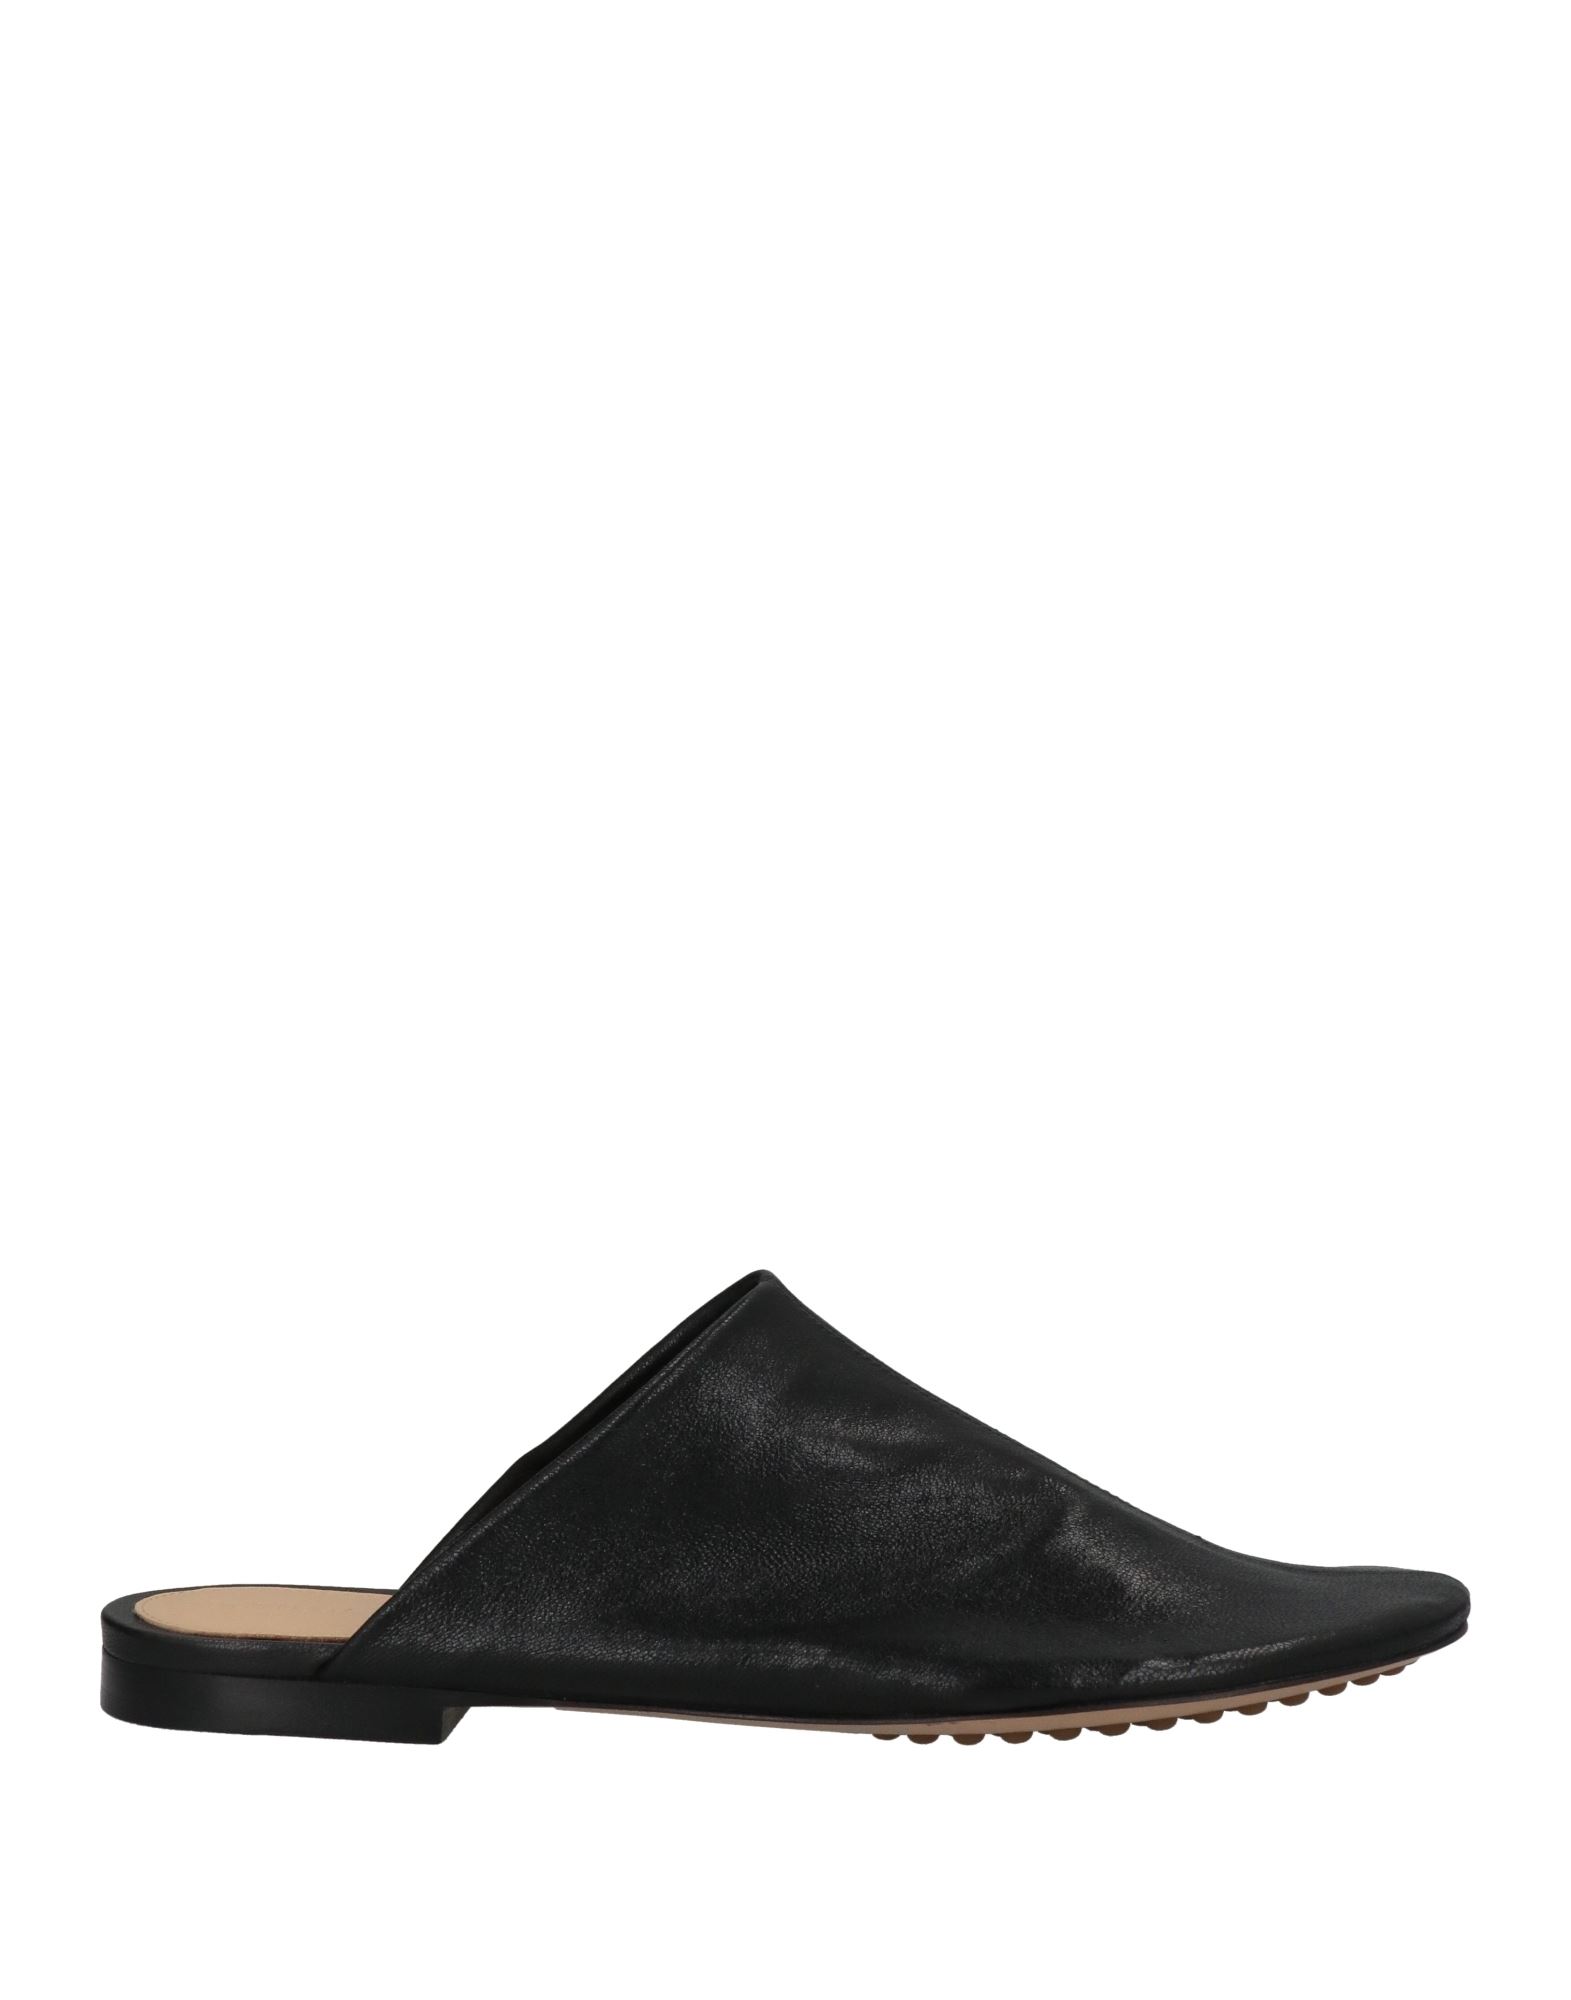 Bottega Veneta Woman Mules & Clogs Black Size 6.5 Soft Leather